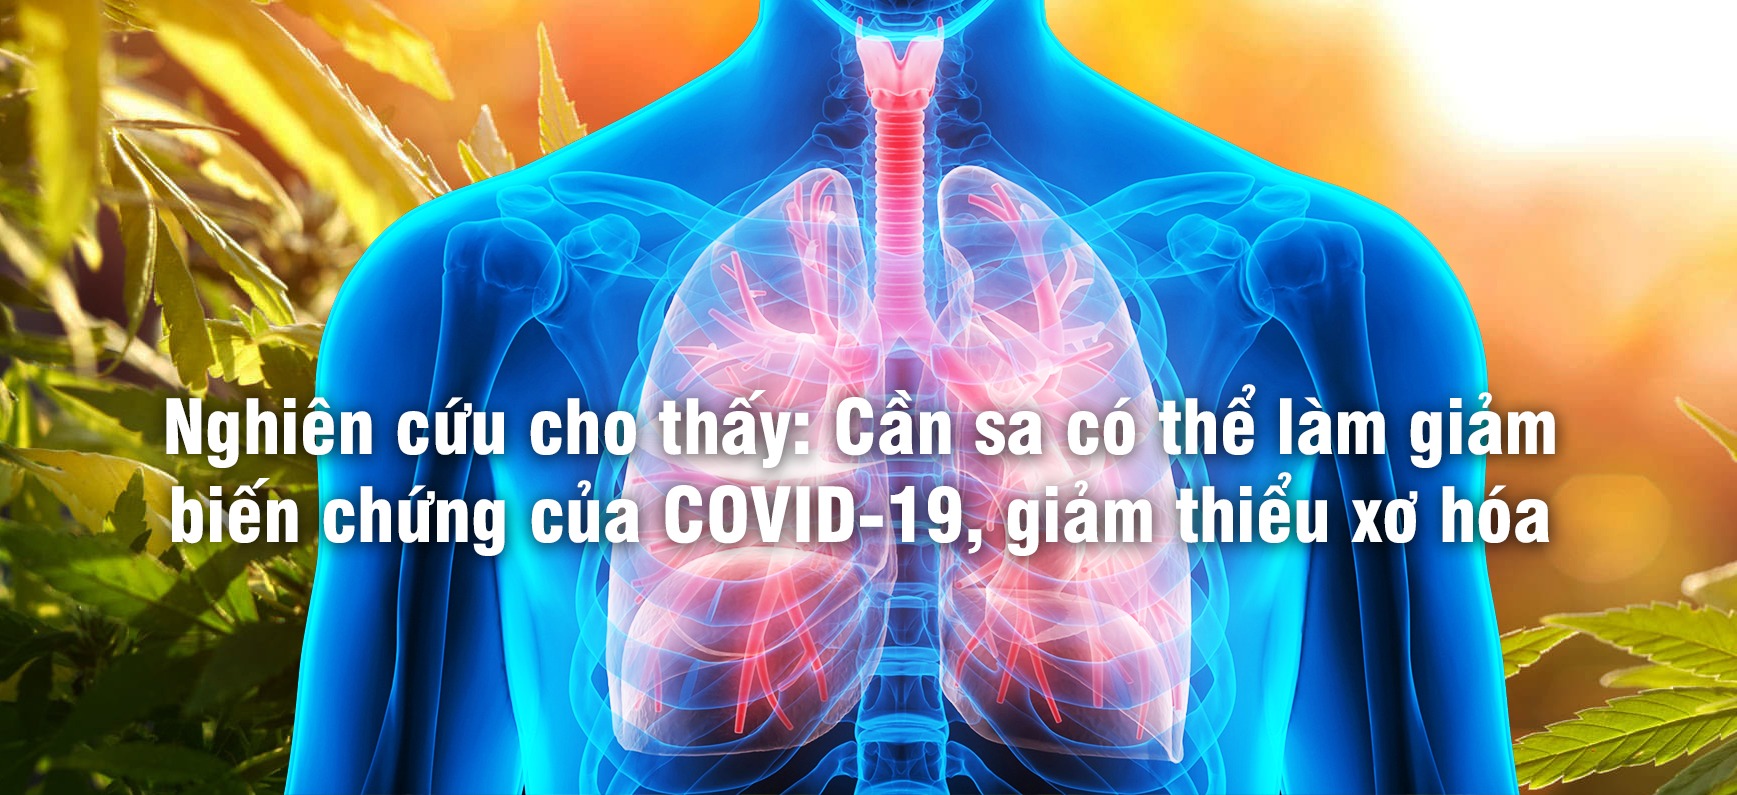 Nghiên cứu cho thấy Cần sa có thể làm giảm biến chứng của COVID 19 giảm thiểu xơ hóa